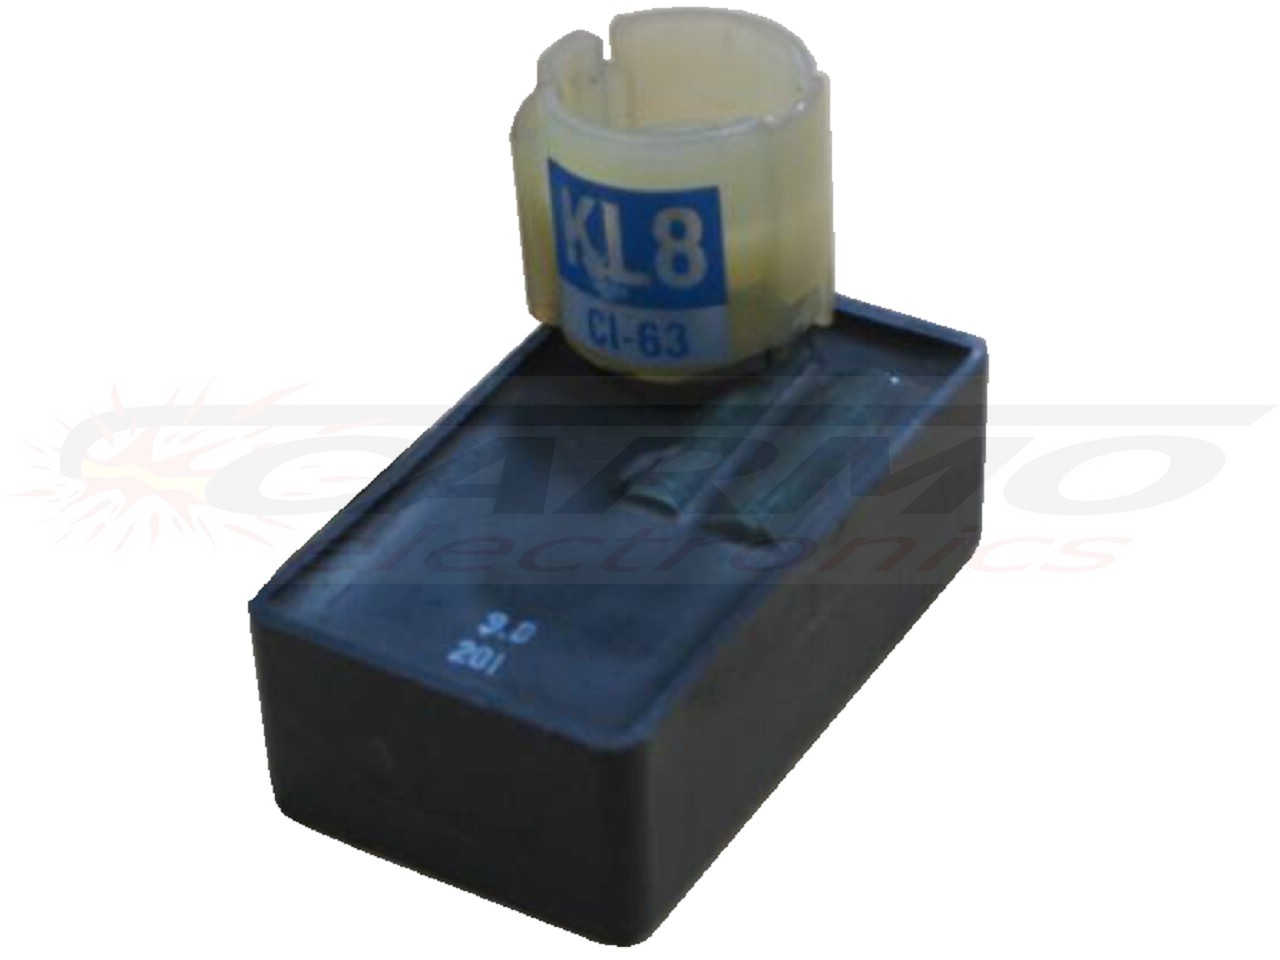 GB250 CB250 Clubman ignição/ módulo de ignição CDI TCI Box (KL8, CI-63)